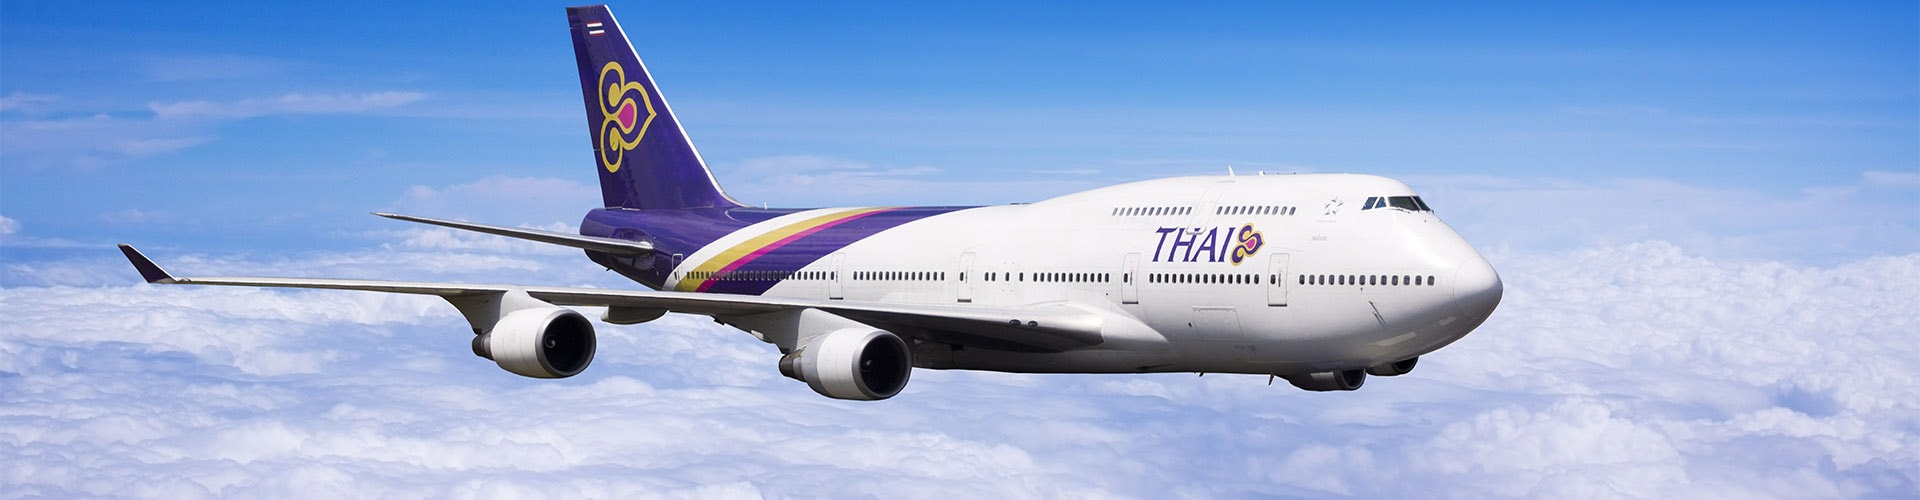 Thai Airways タイ国際航空航空画像1